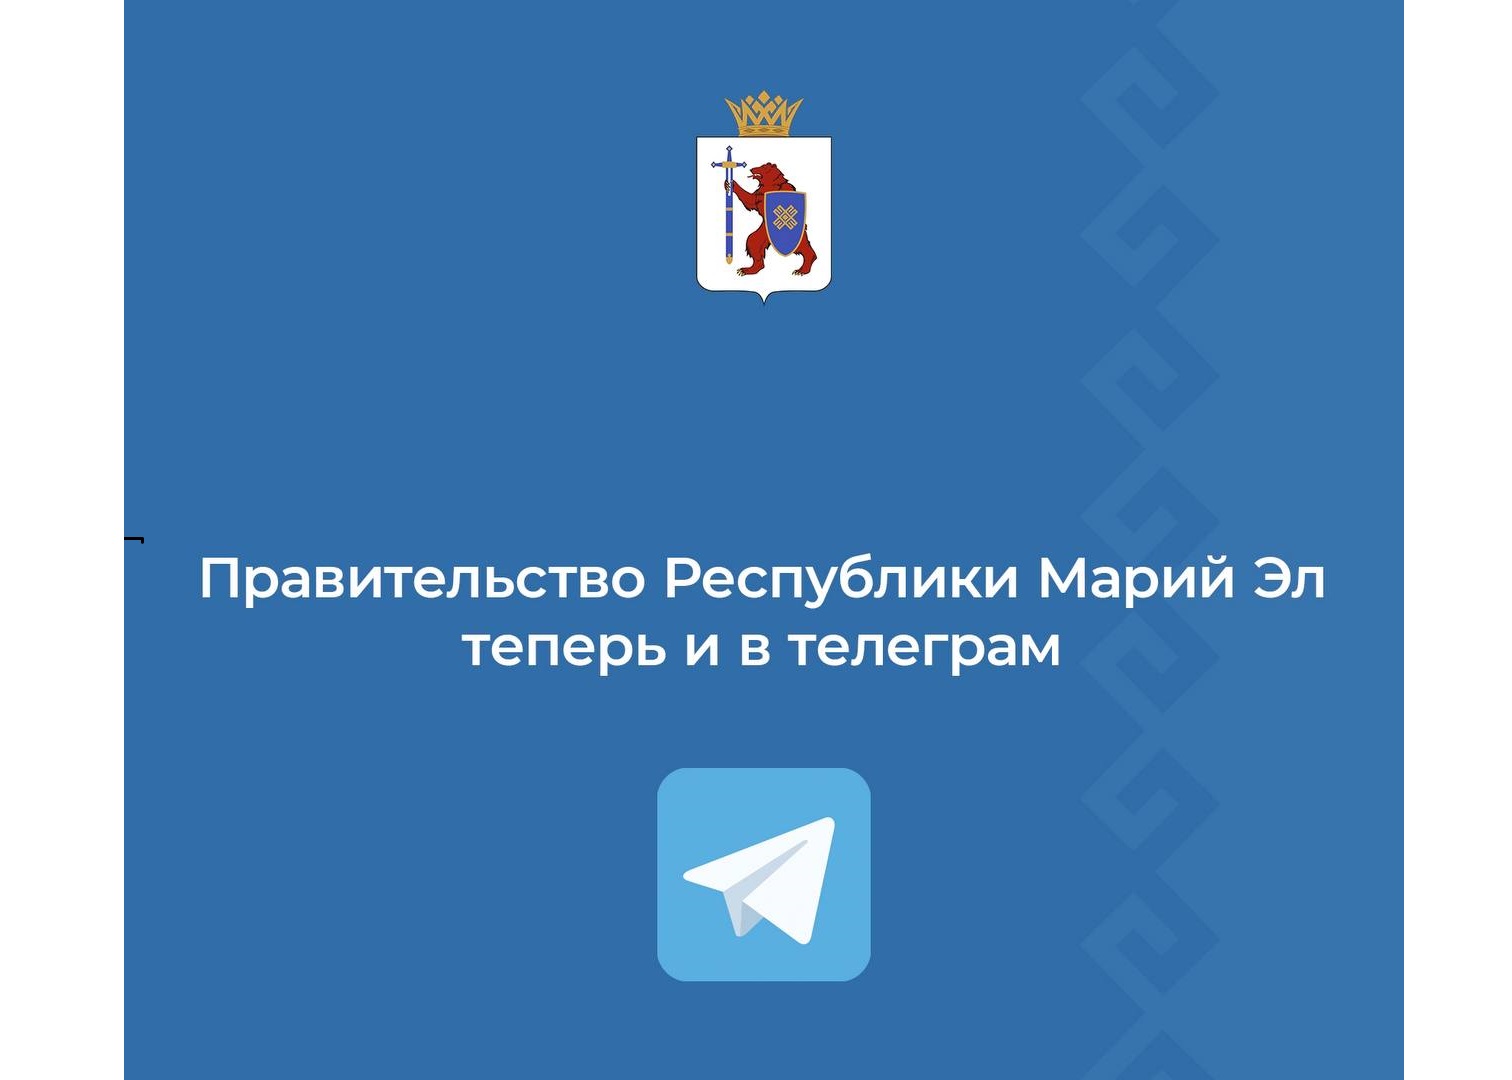 У Правительства Марий Эл появился свой канал в Telegram